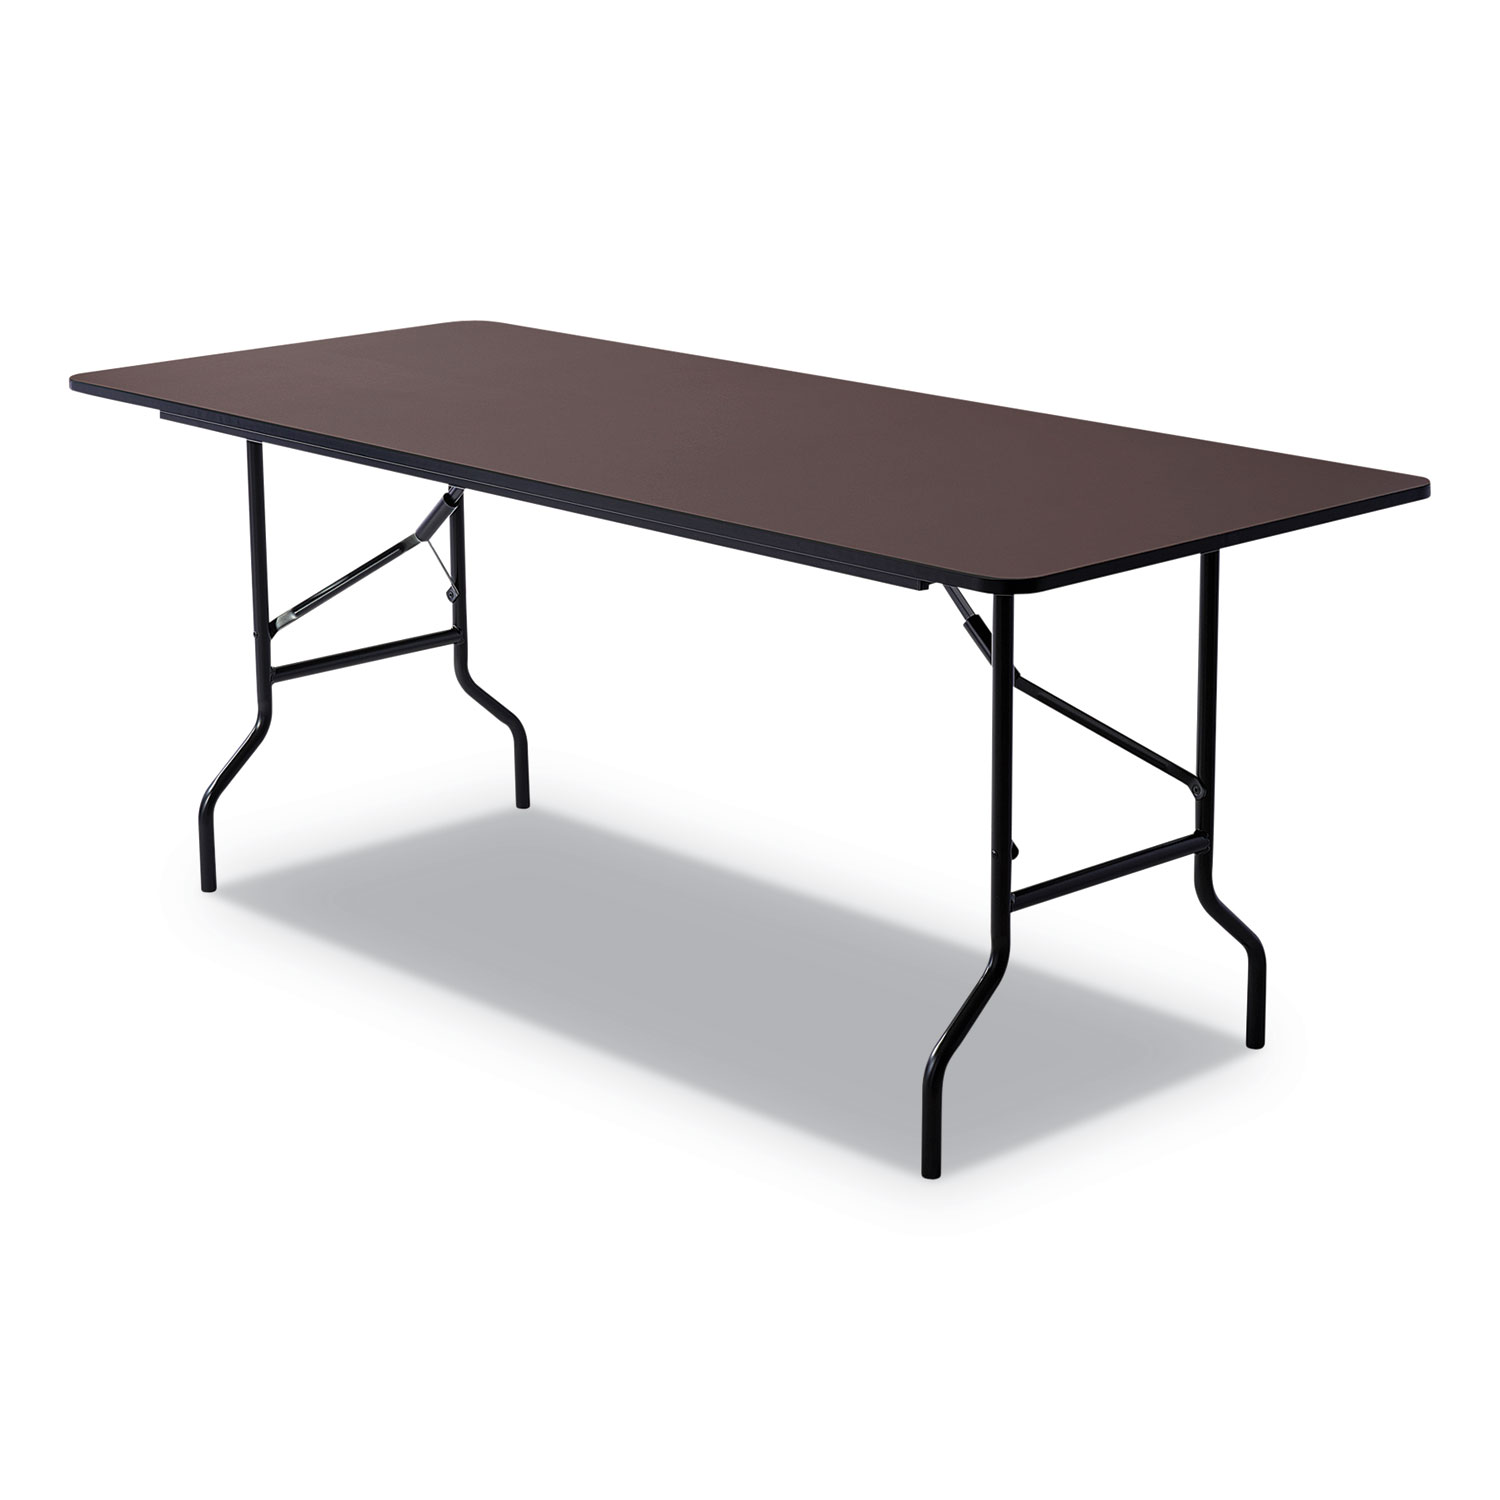  Iceberg 55324 Economy Wood Laminate Folding Table, Rectangular, 72w x 30d x 29h, Walnut (ICE55324) 